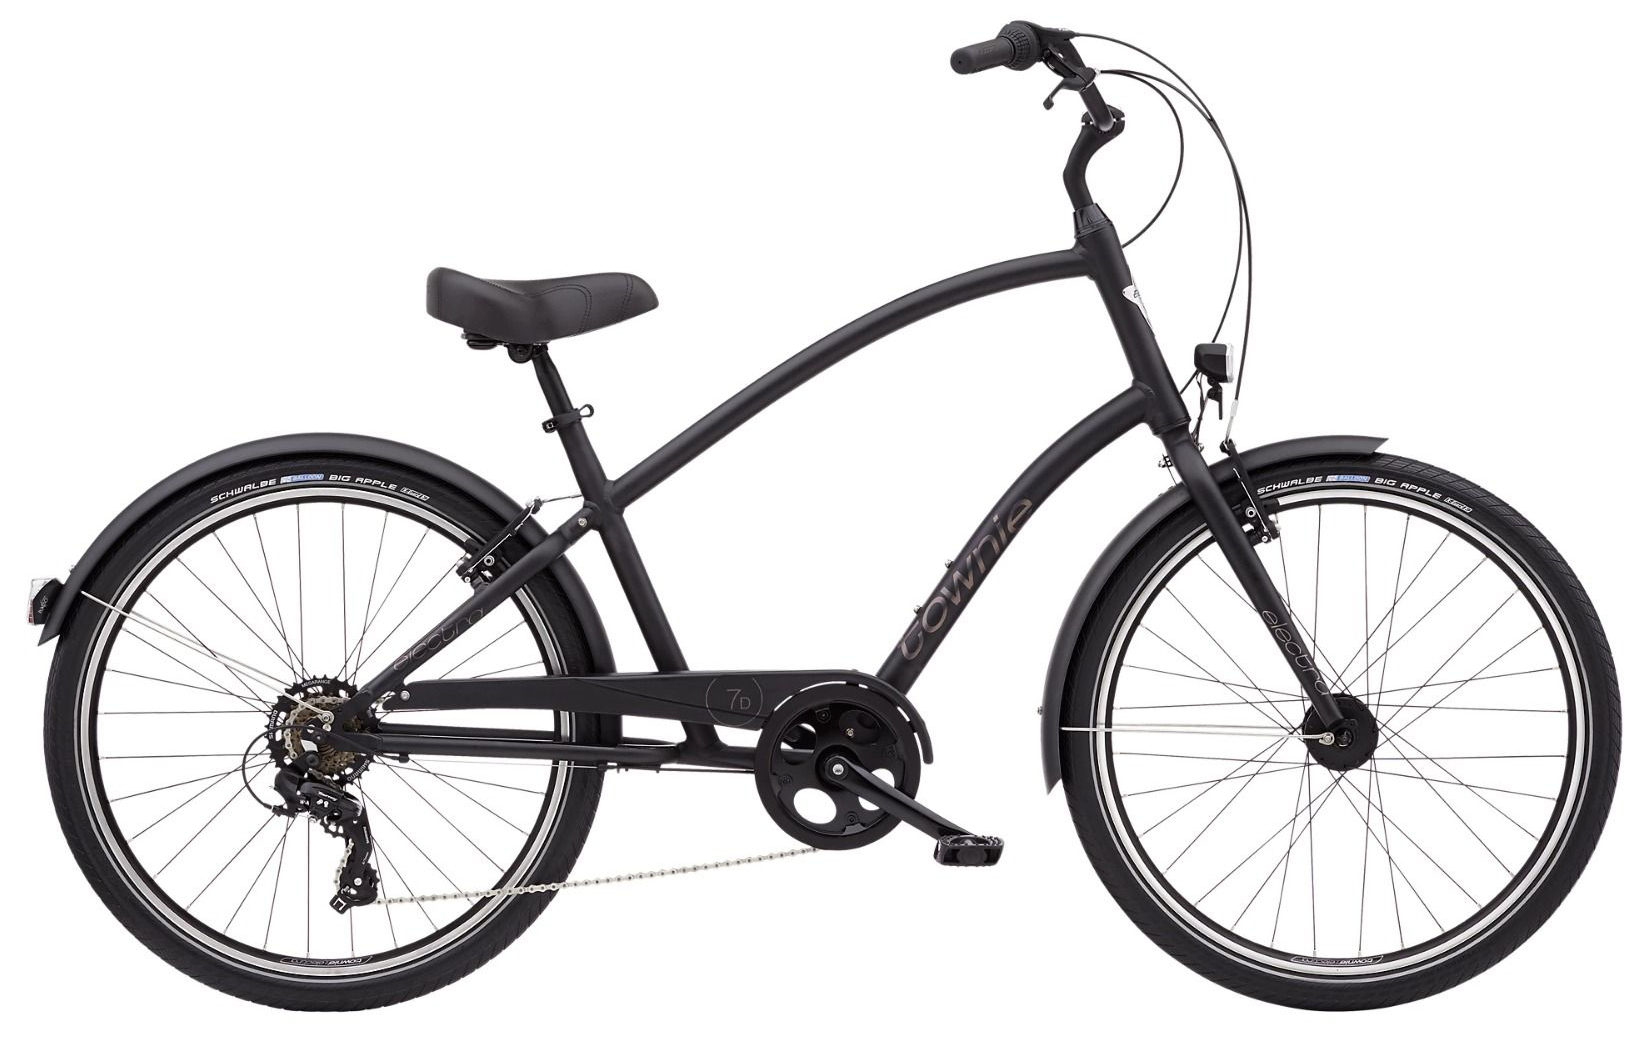  Отзывы о Городском велосипеде Electra Townie 7D EQ Step Over 2022